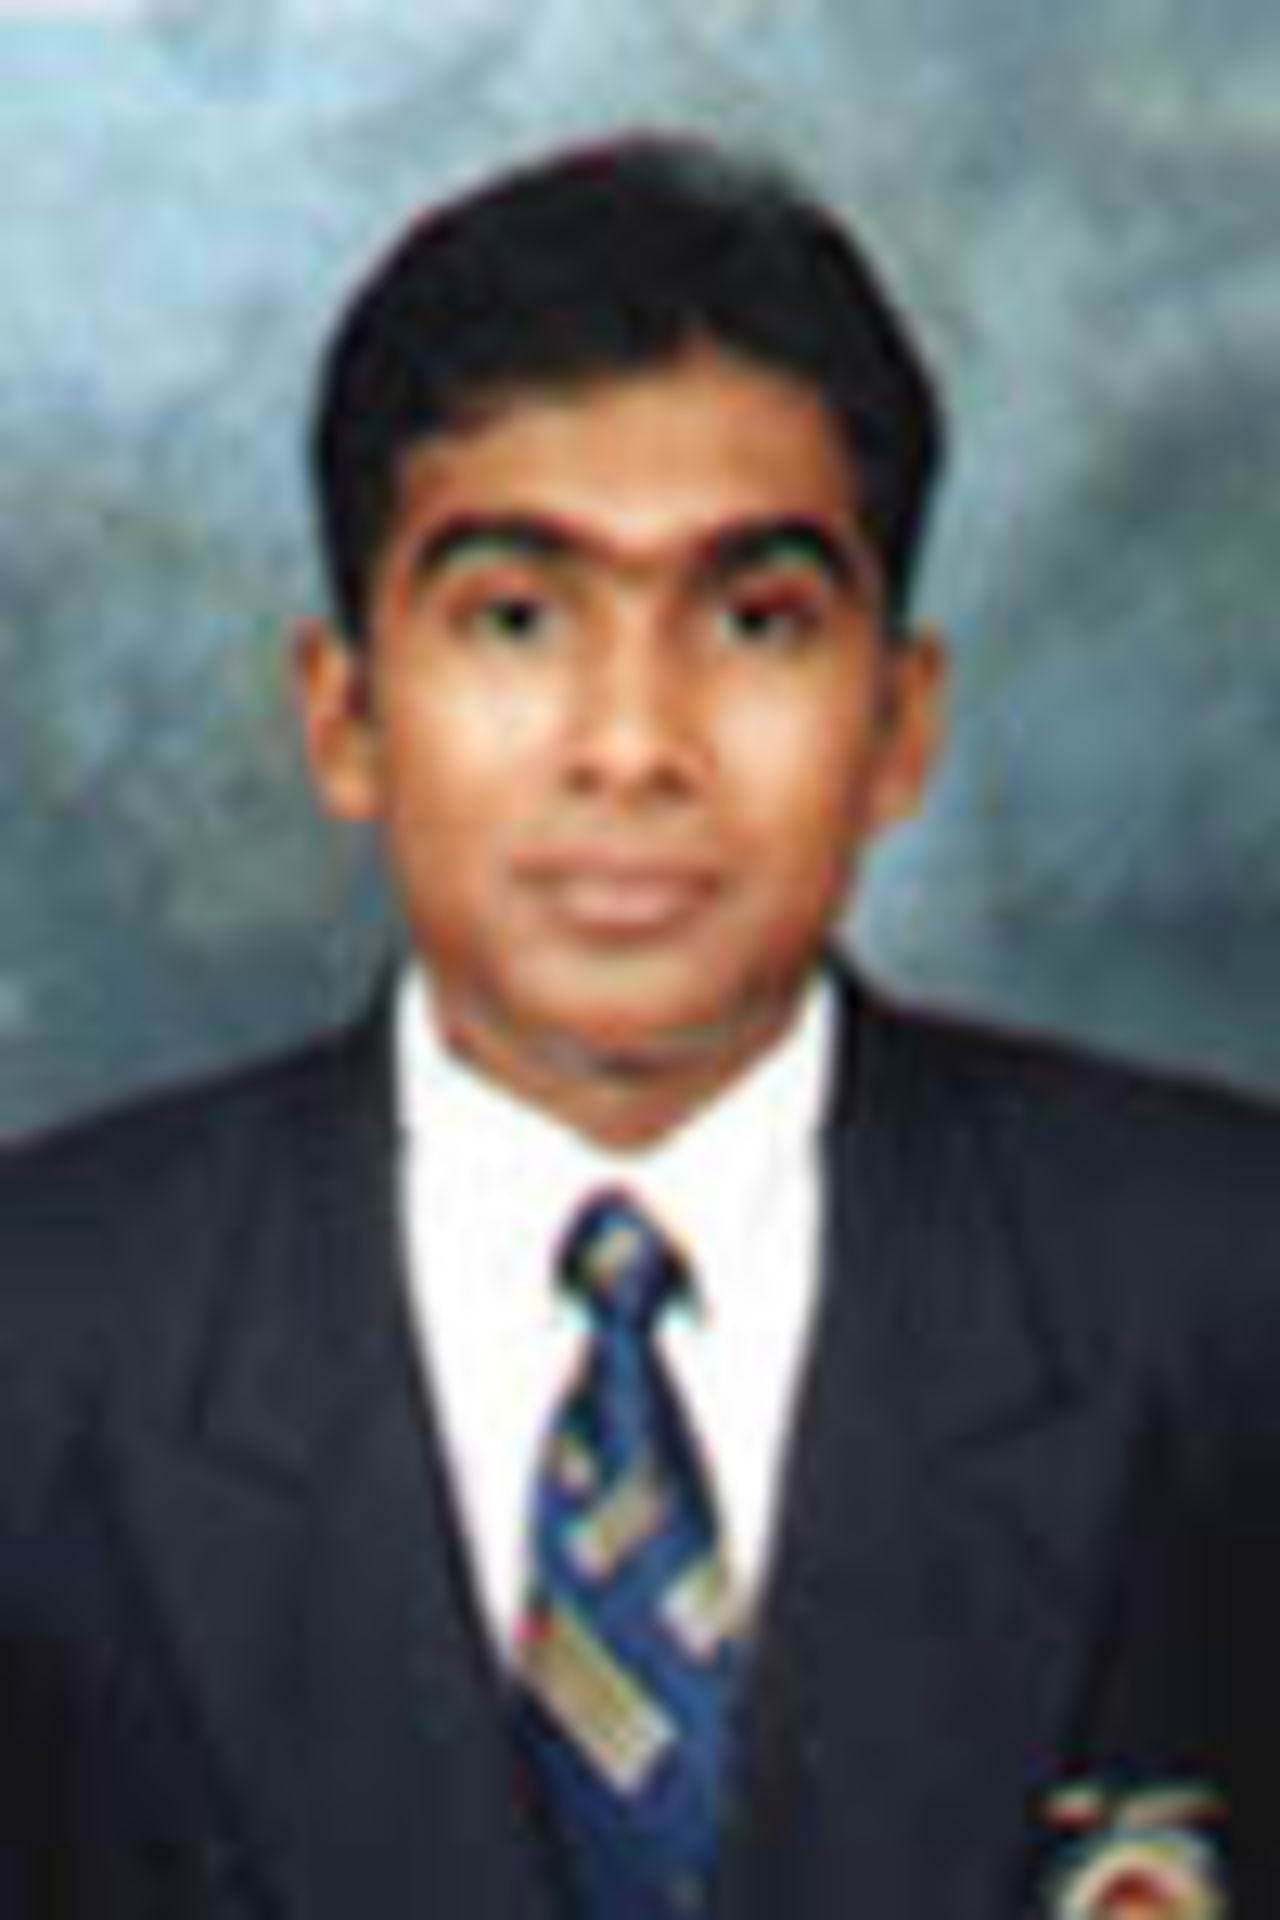 Portrait of Jayawardene, 2001